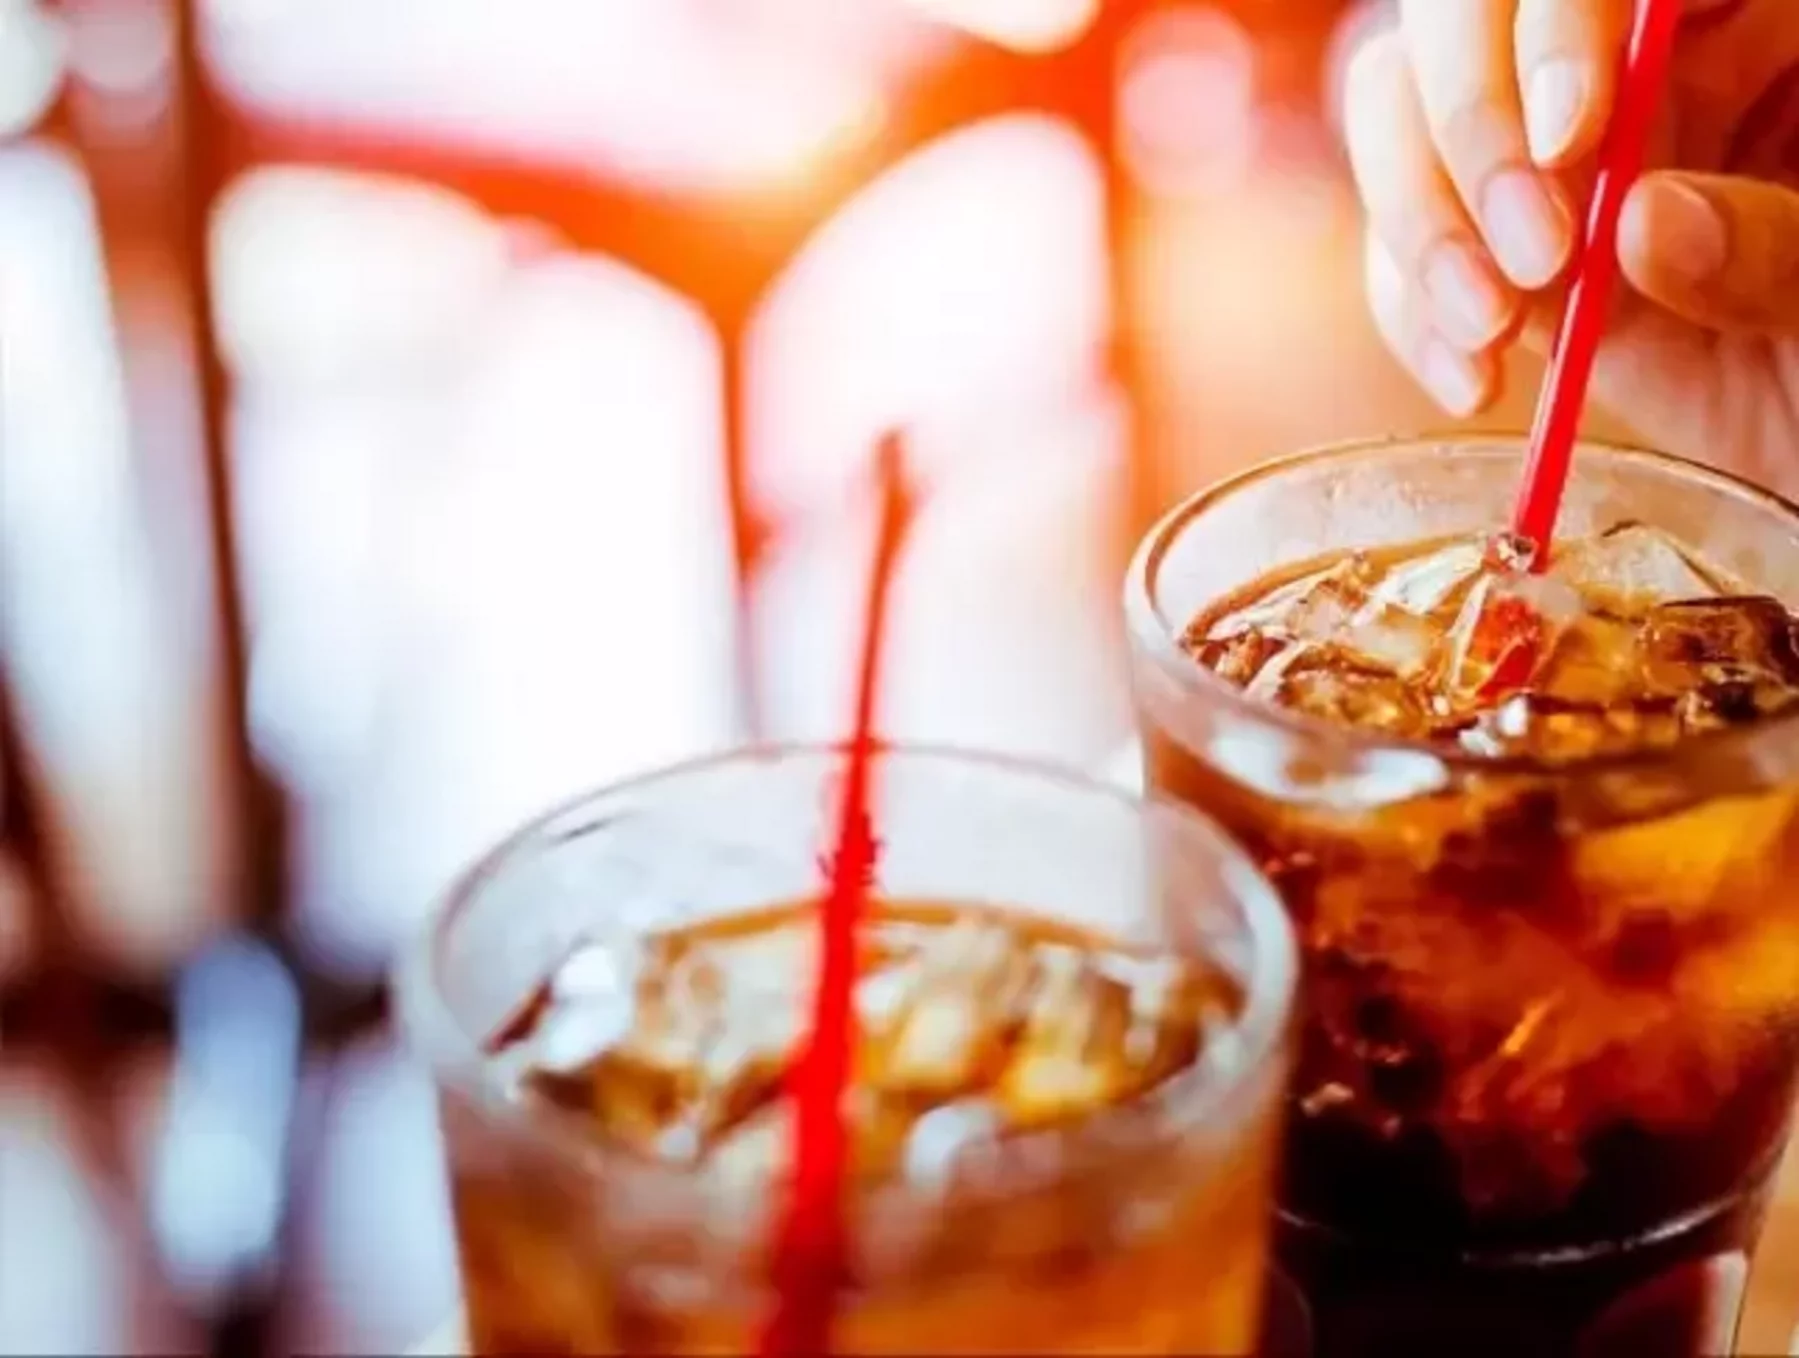 PepsiCo to Expands SodaStream Business